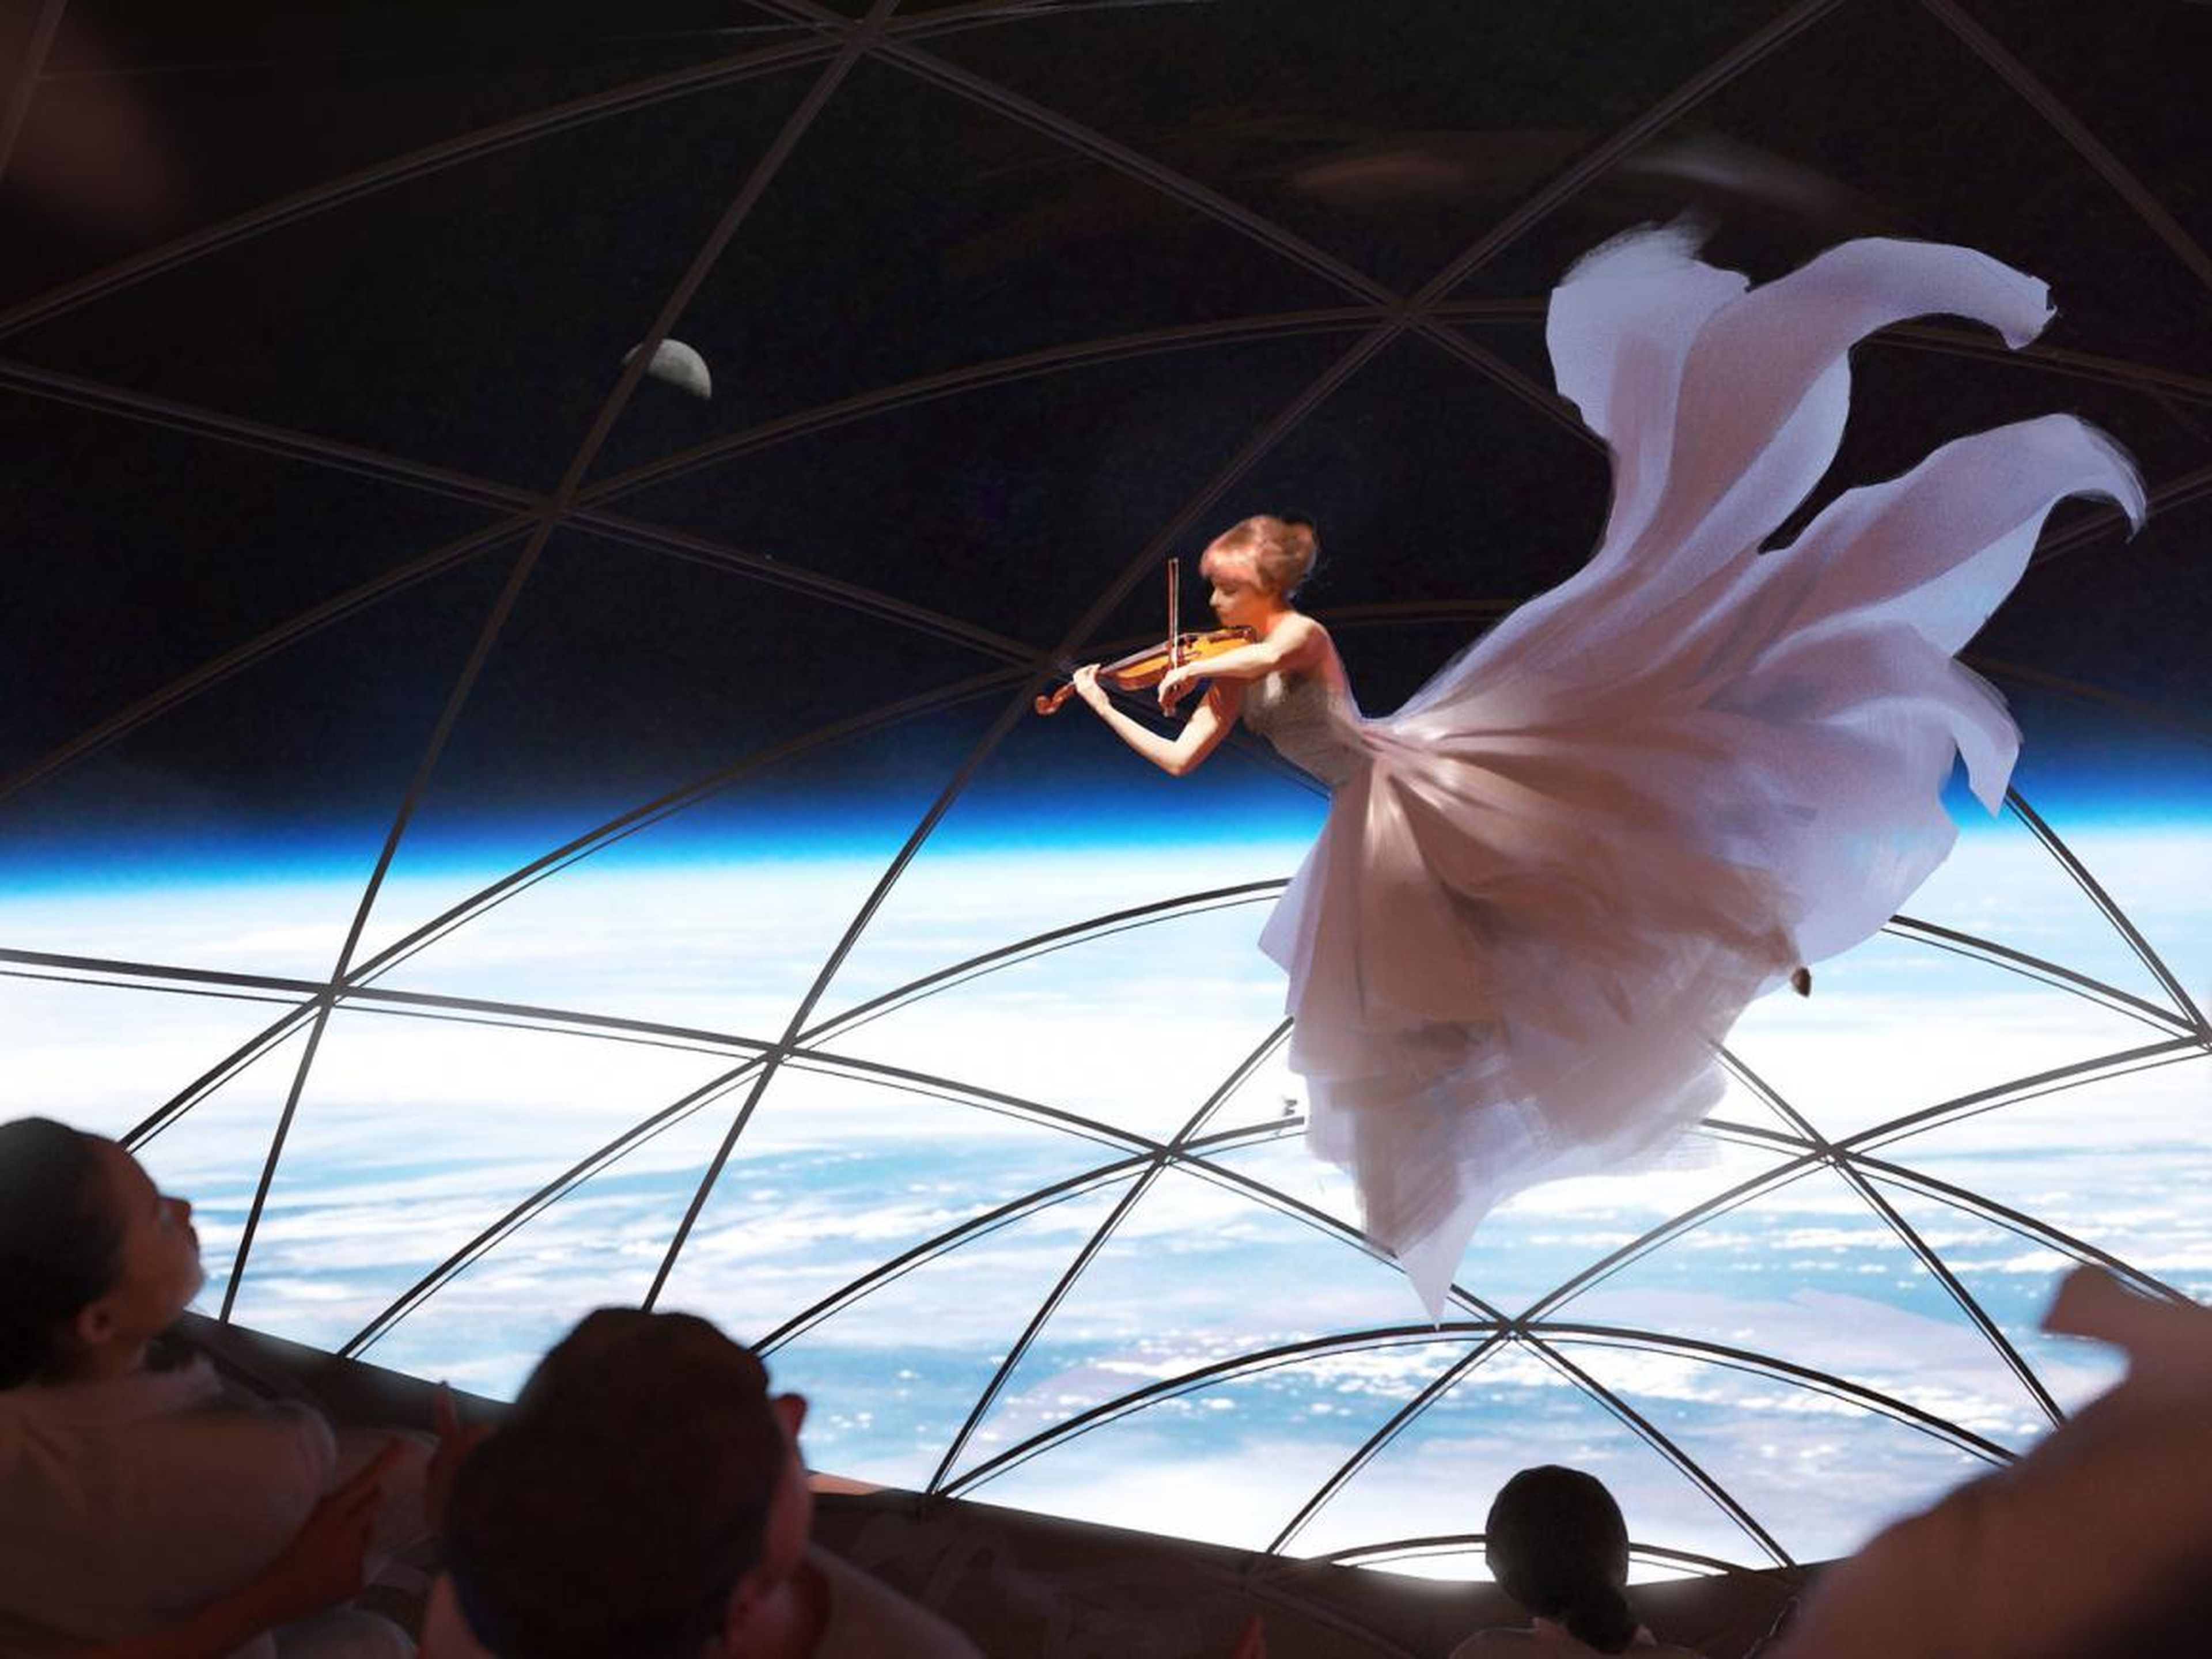 SpaceX ha producido obras de arte que incluyen una violinista que se presenta en el viaje a Marte en su nave Starship.